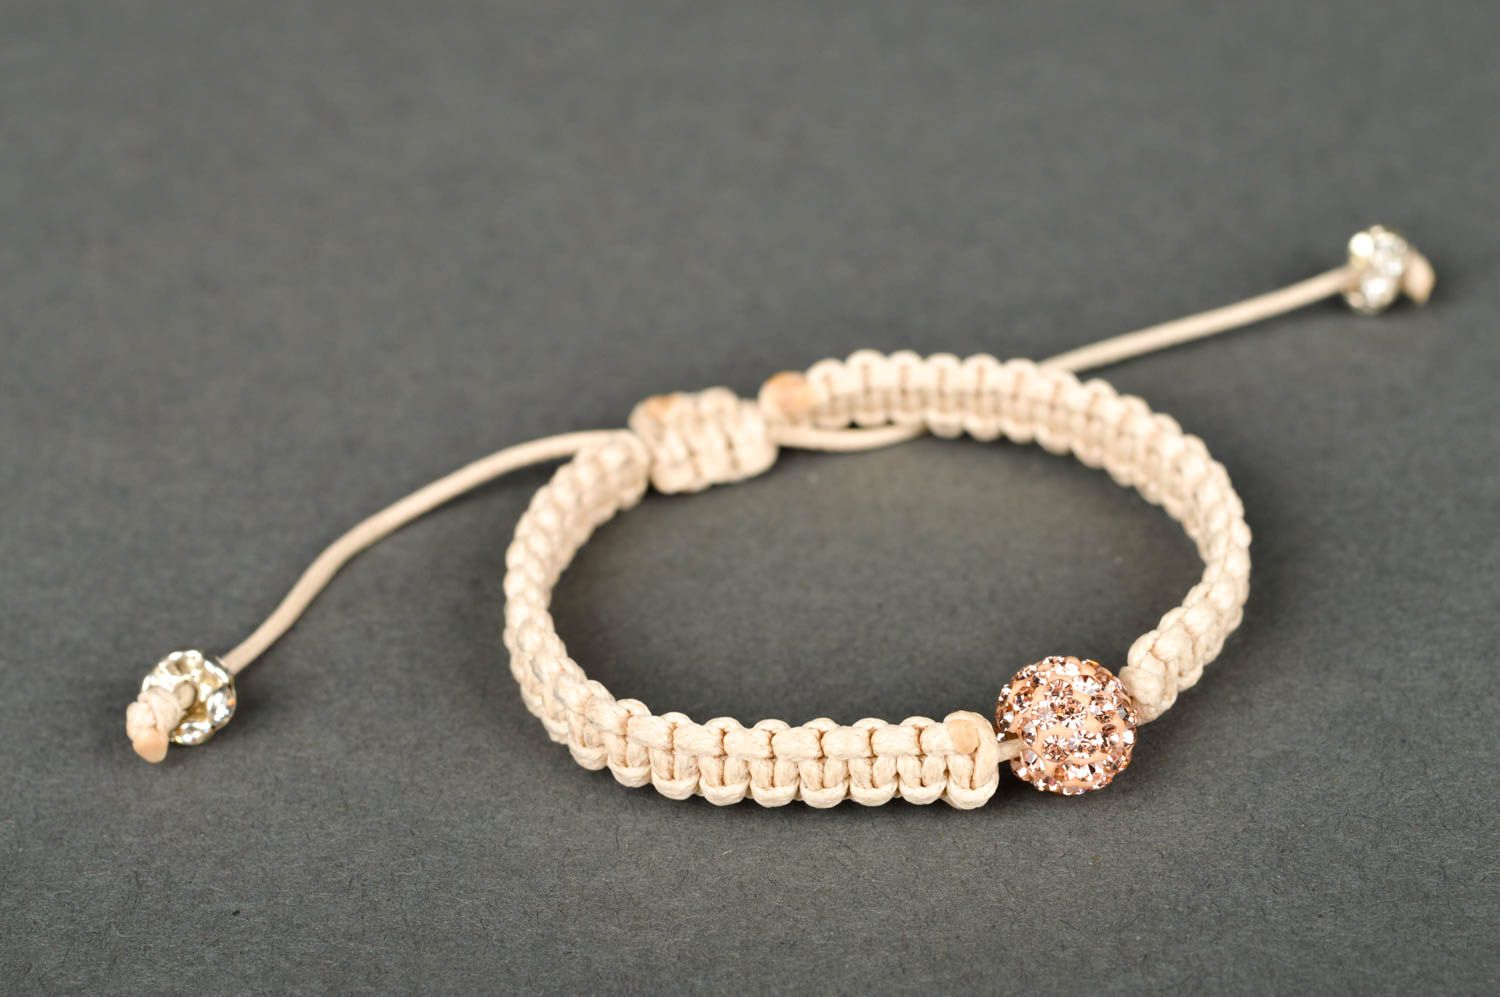 Wrist bracelet handmade string bracelet friendship bracelet gifts for women photo 3